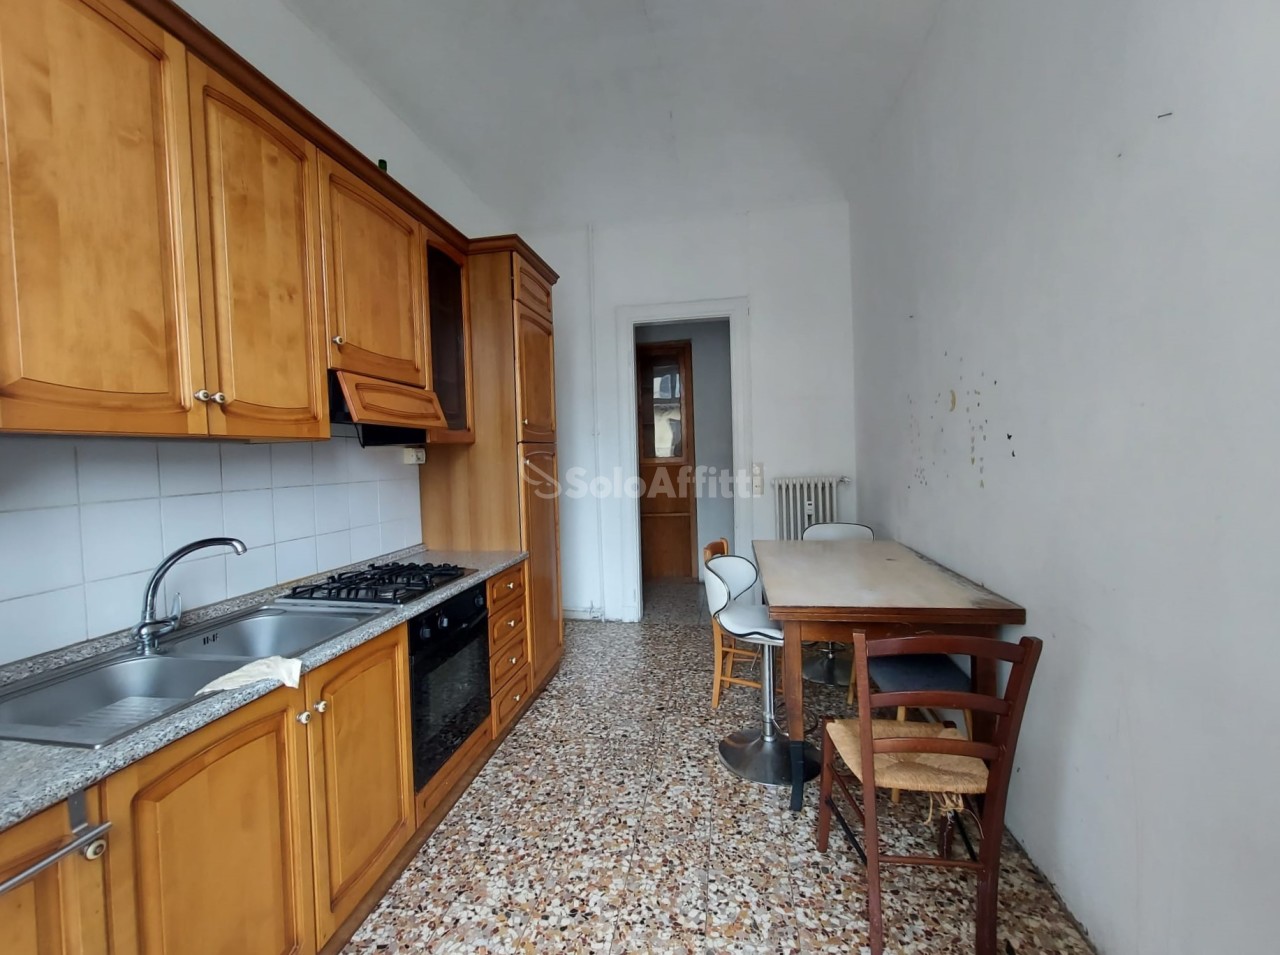 Appartamento in affitto a Torino, 2 locali, prezzo € 370 | CambioCasa.it